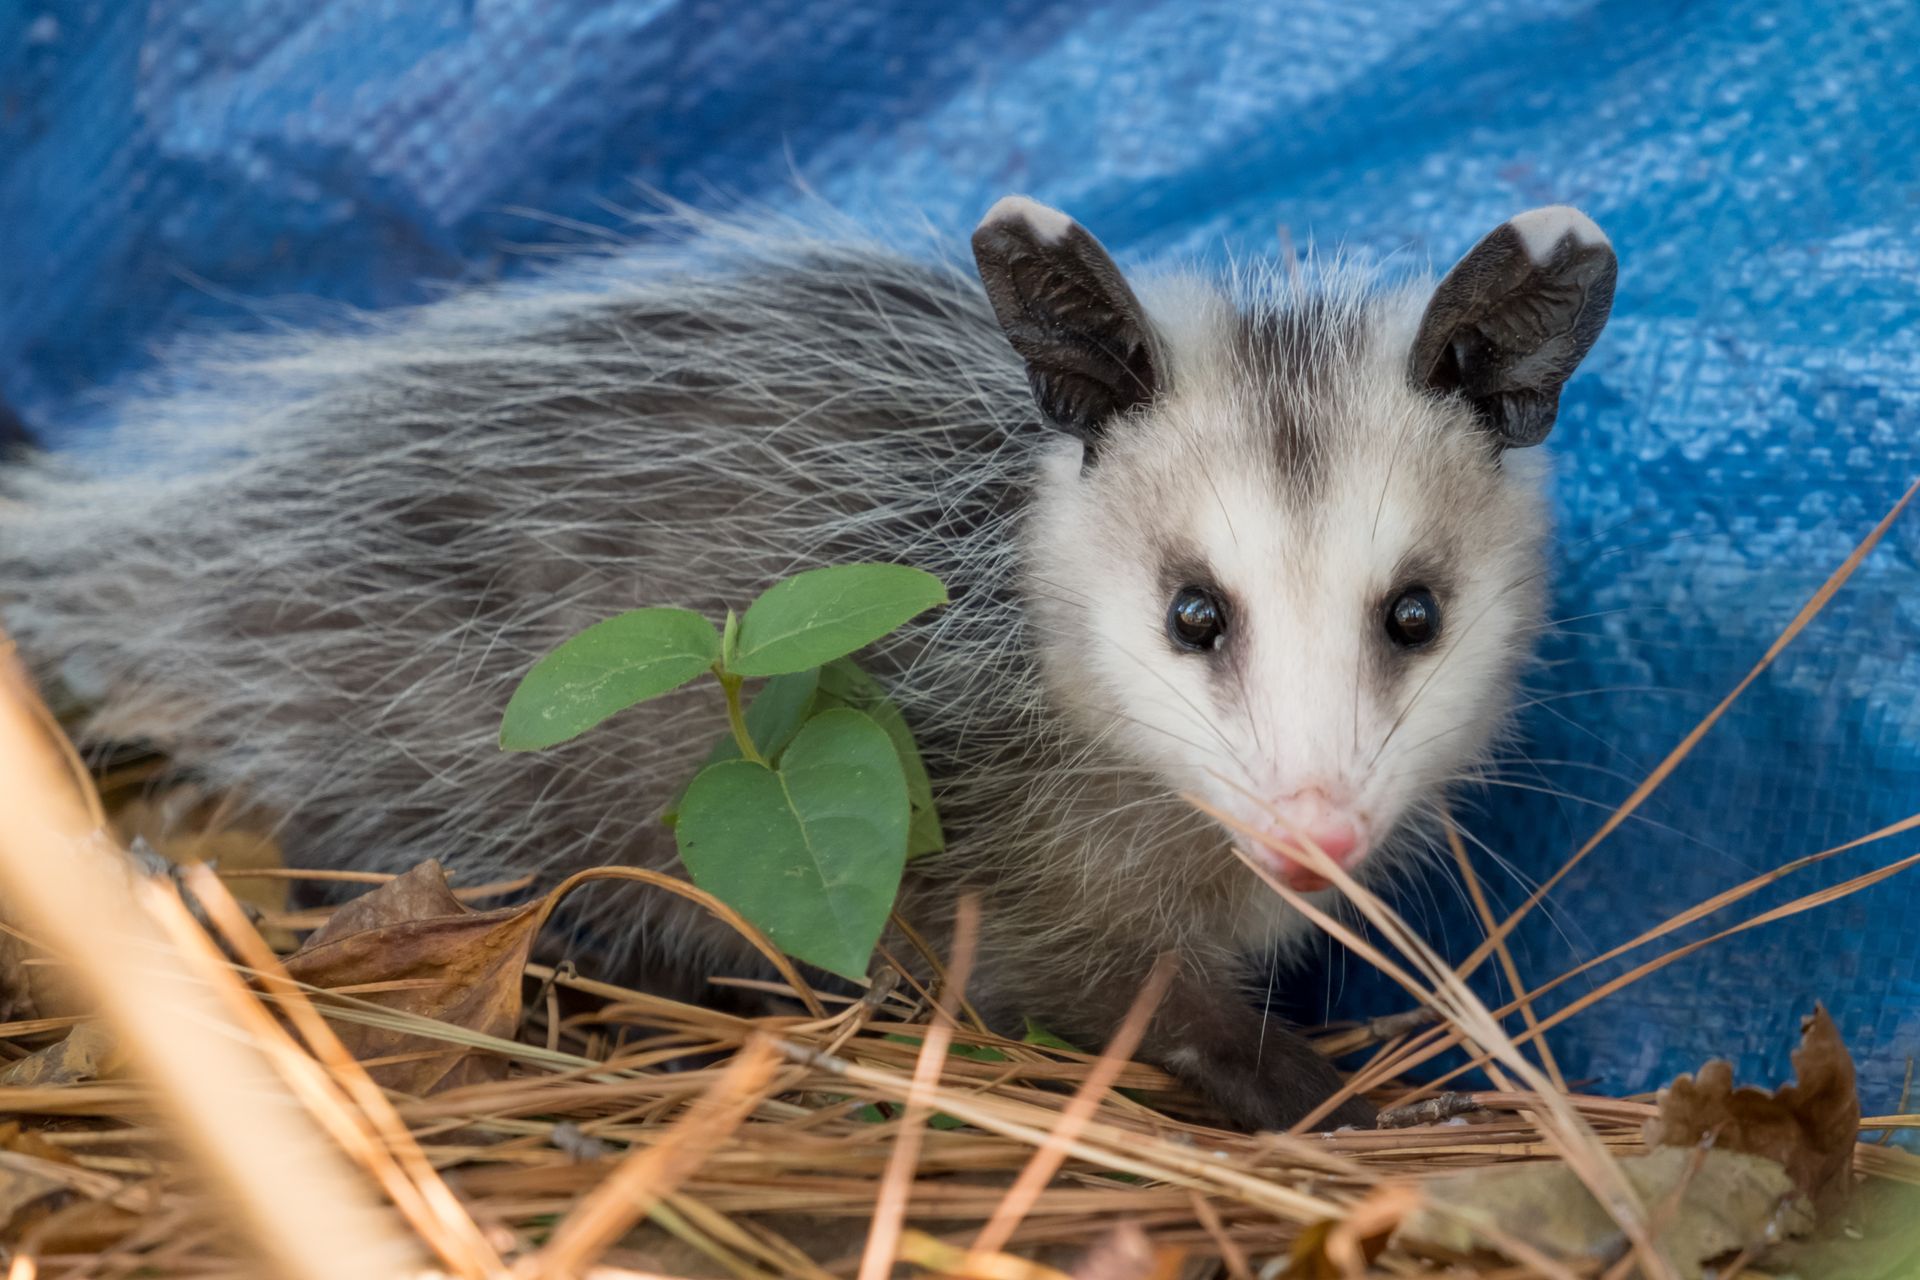 Opossum in yard